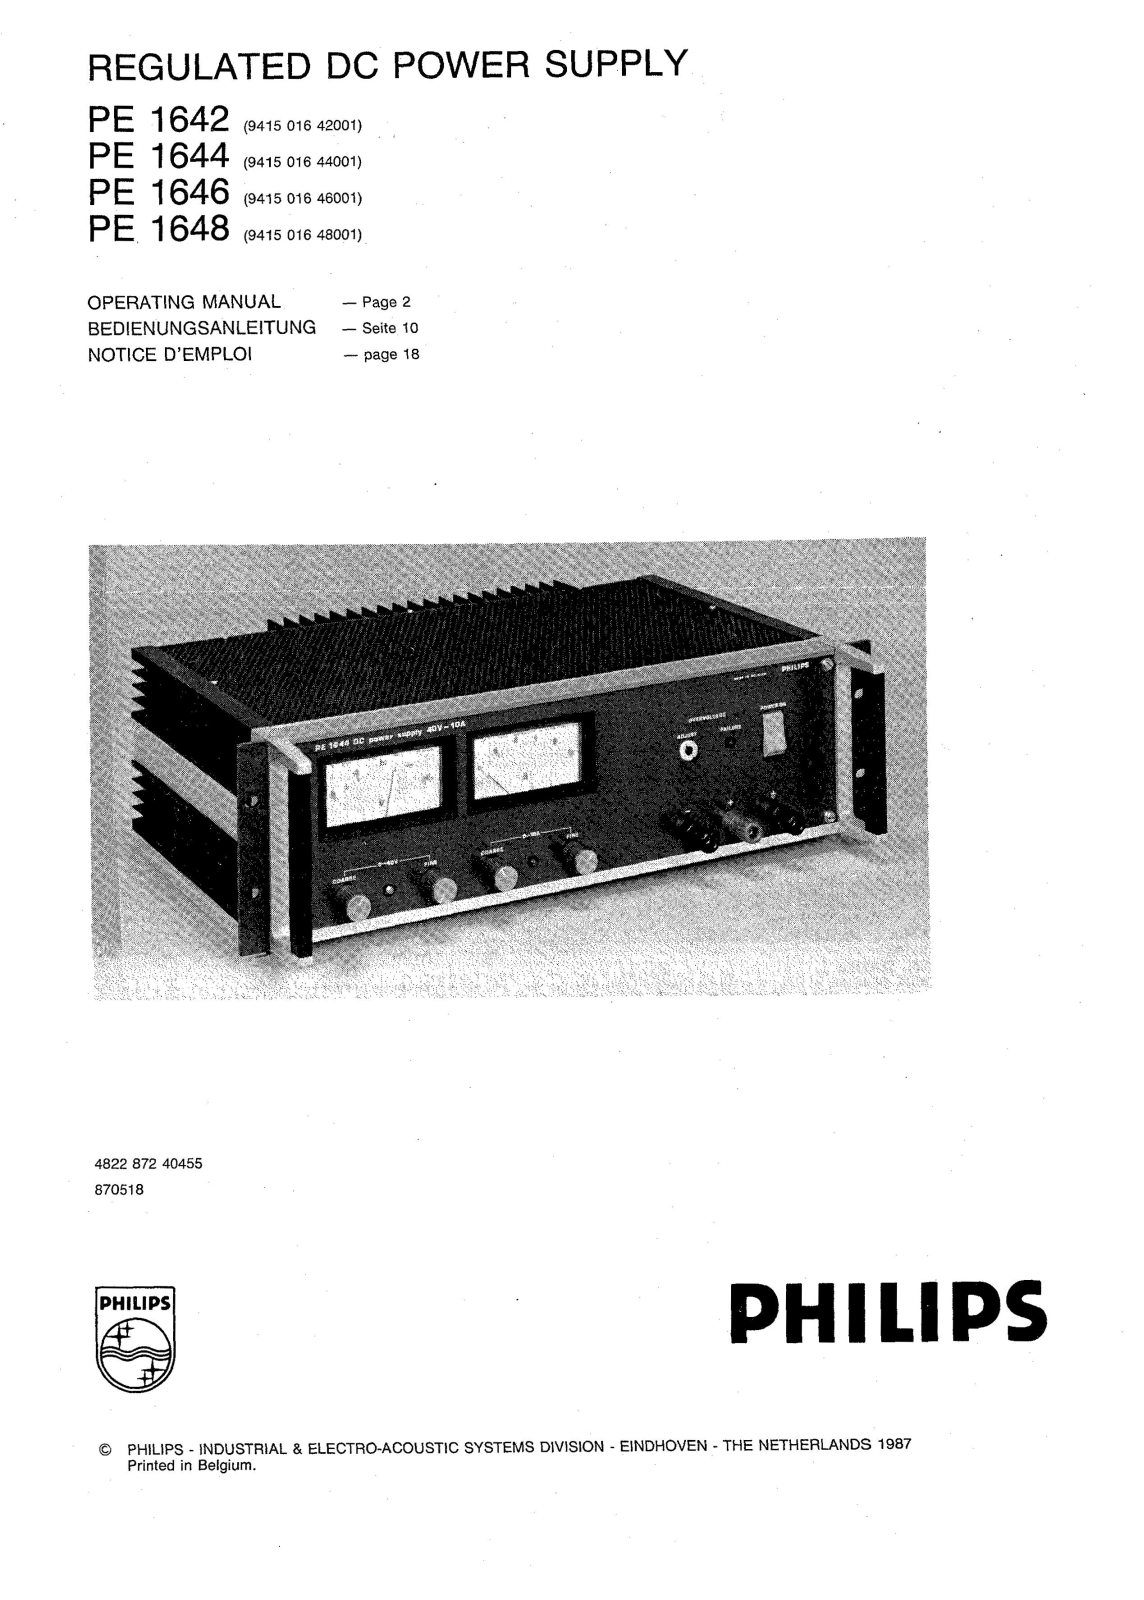 Philips PE 1648, PE 1646, PE 1644, PE 1642 Service manual